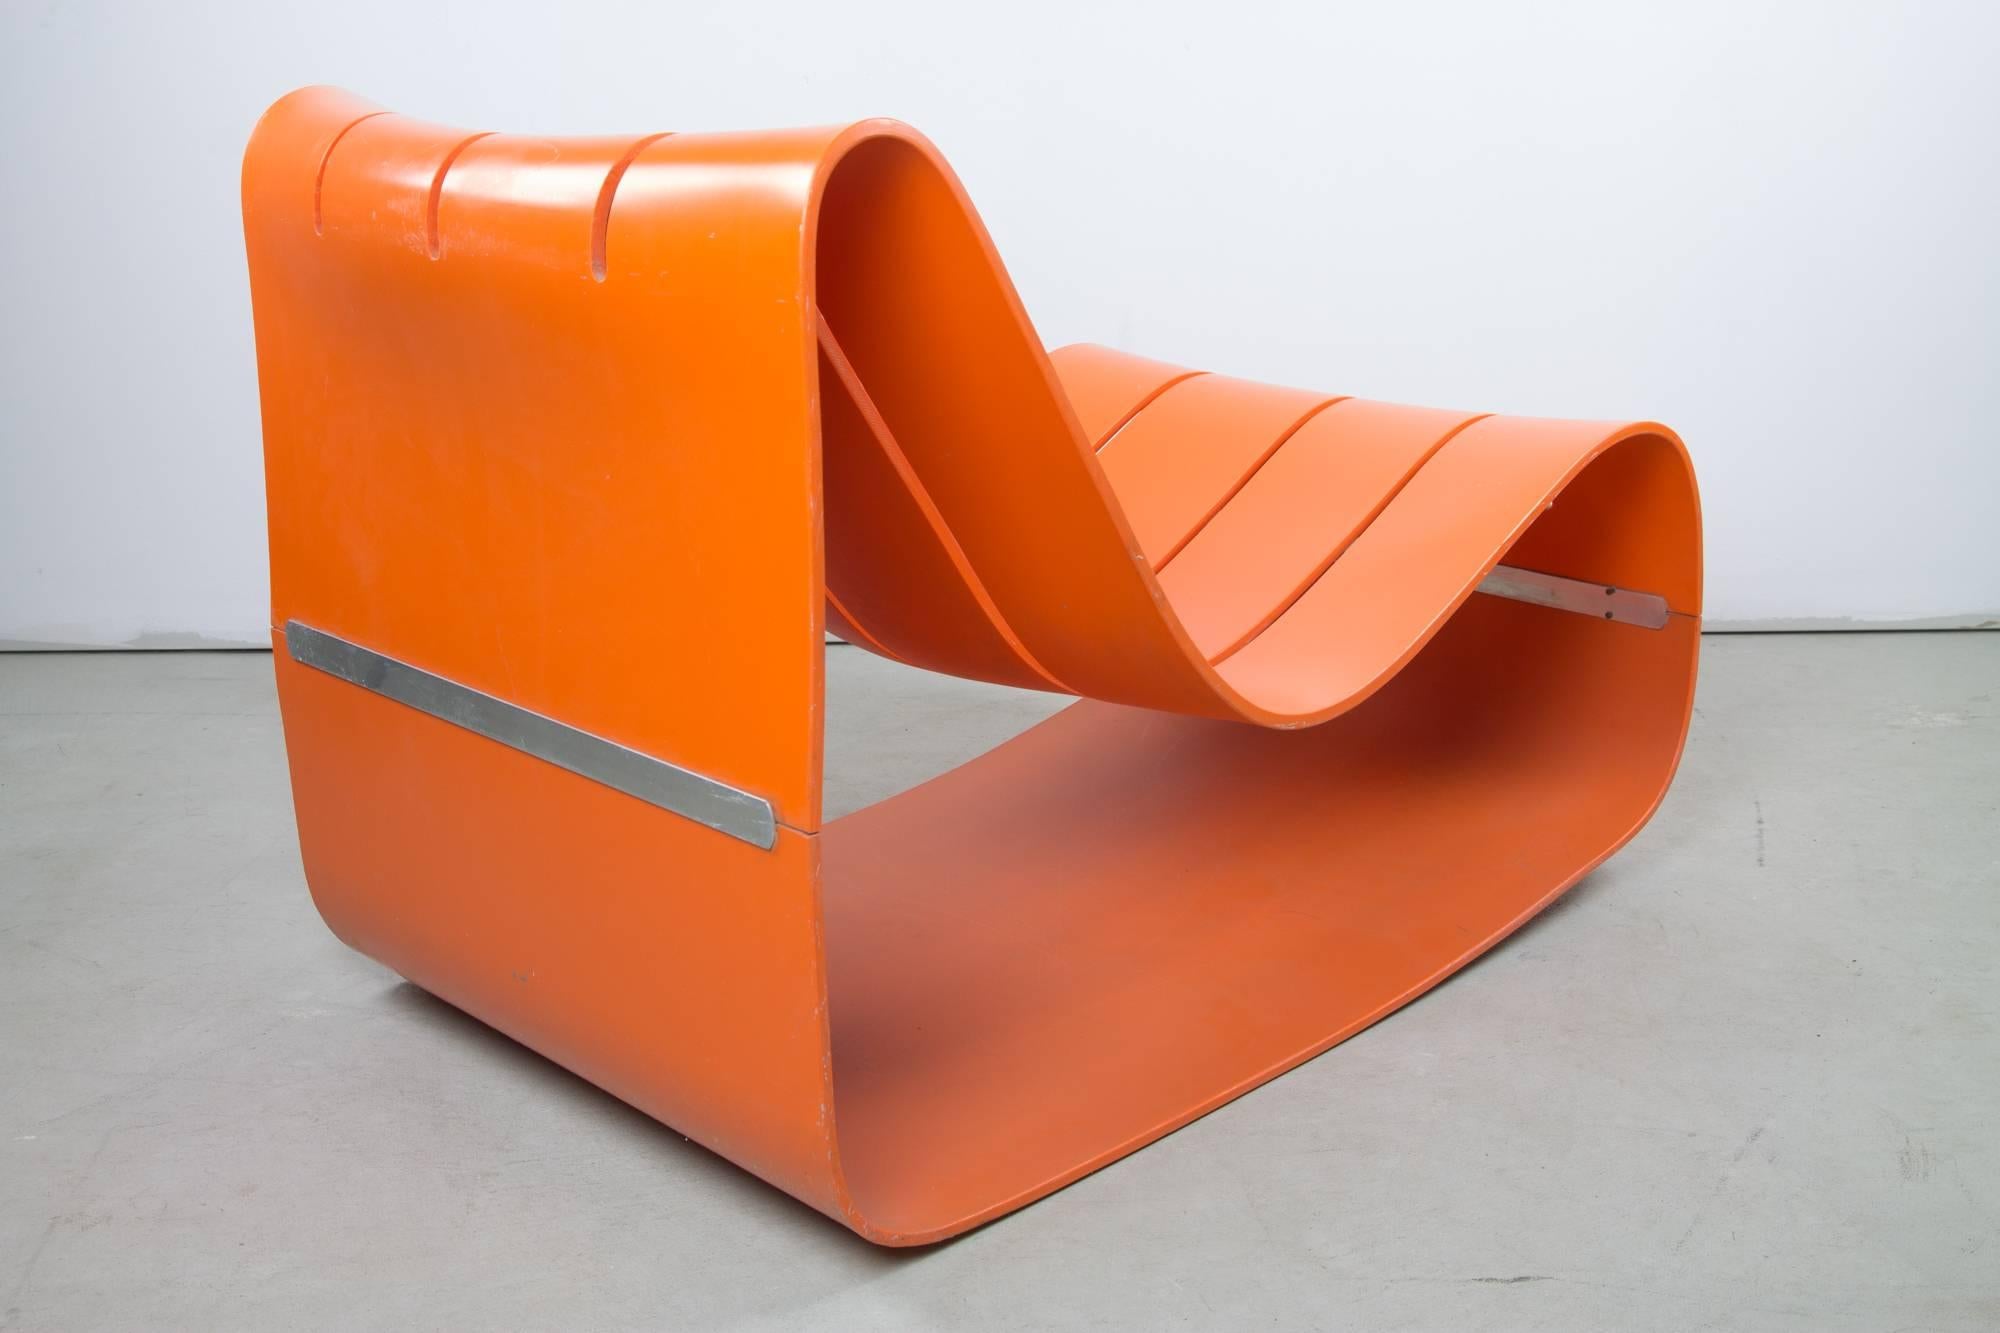 Dieser sehr seltene Stuhl von Motomi Kawakami für Alberto Bazzani besteht aus zwei Schalen aus orangefarbenem ABS-Kunststoff, die an der unteren Rückenlehne und an der Vorderseite durch eine doppelte Metallstange verbunden sind, die von der